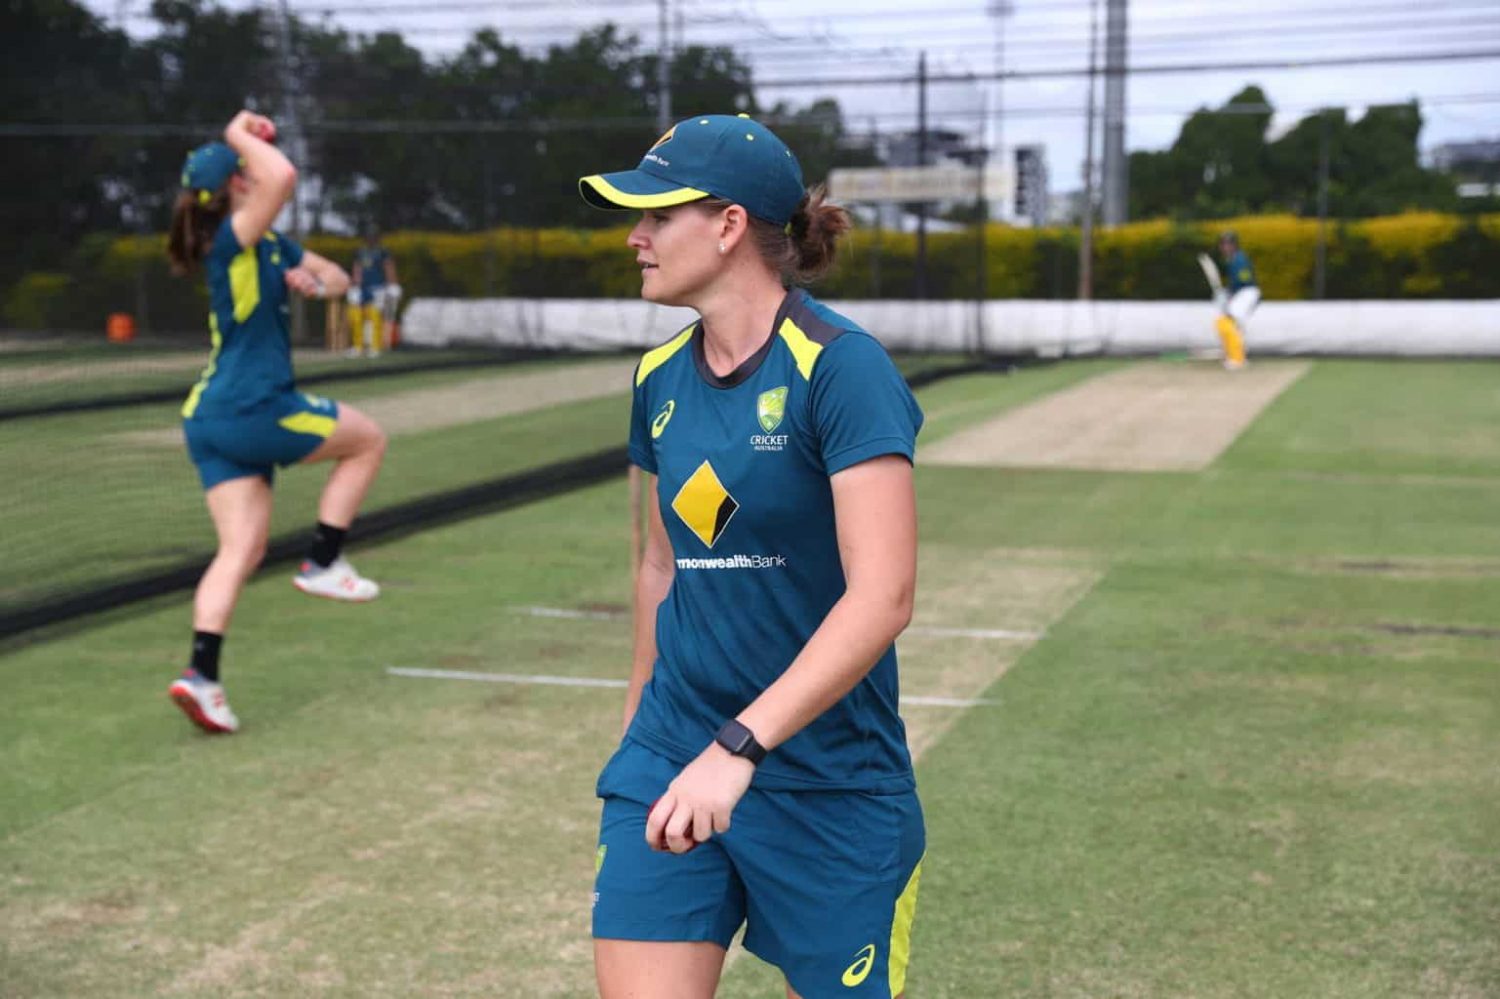 Apple Watch Helps Power The Australian Women’s Cricket Team